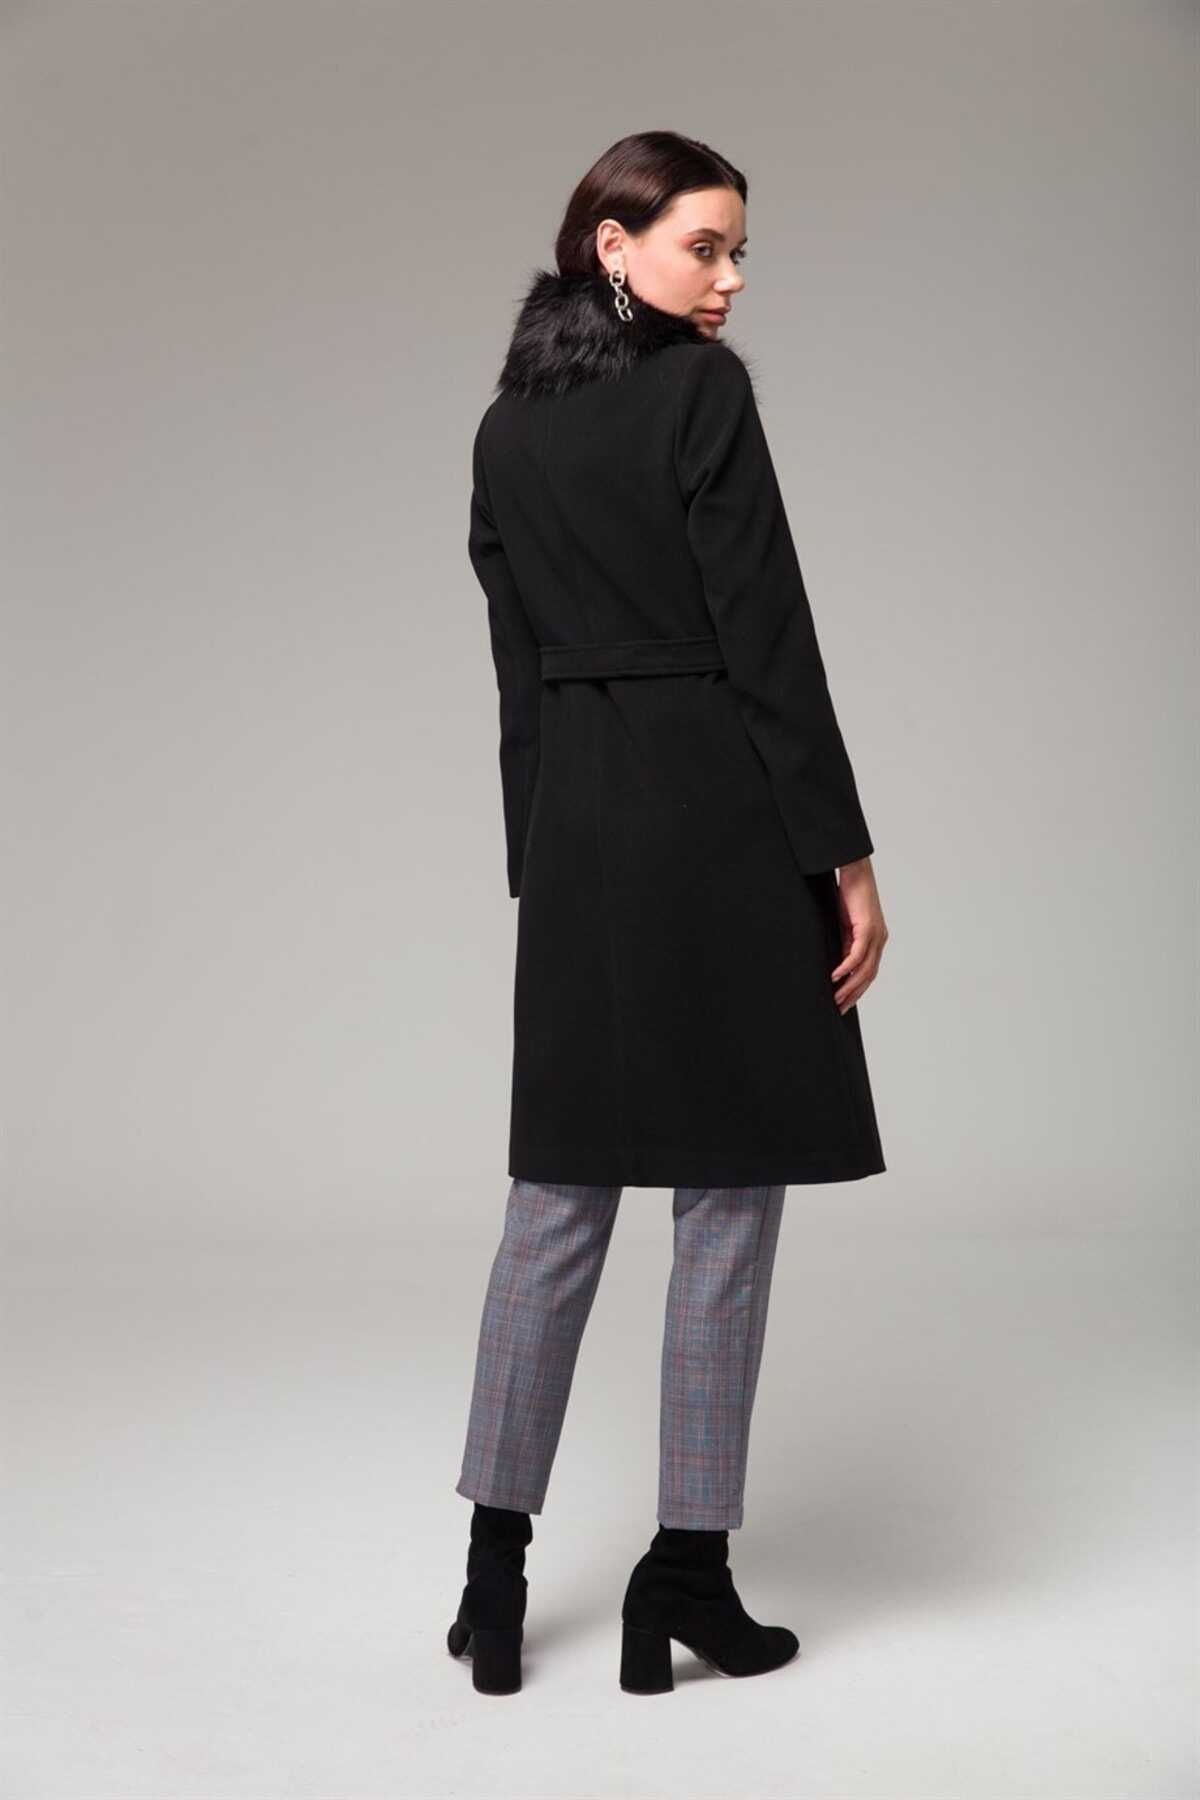 کت بلند زنانه یقه خز دار جیب دار دکمه ای مشکی برند Concept